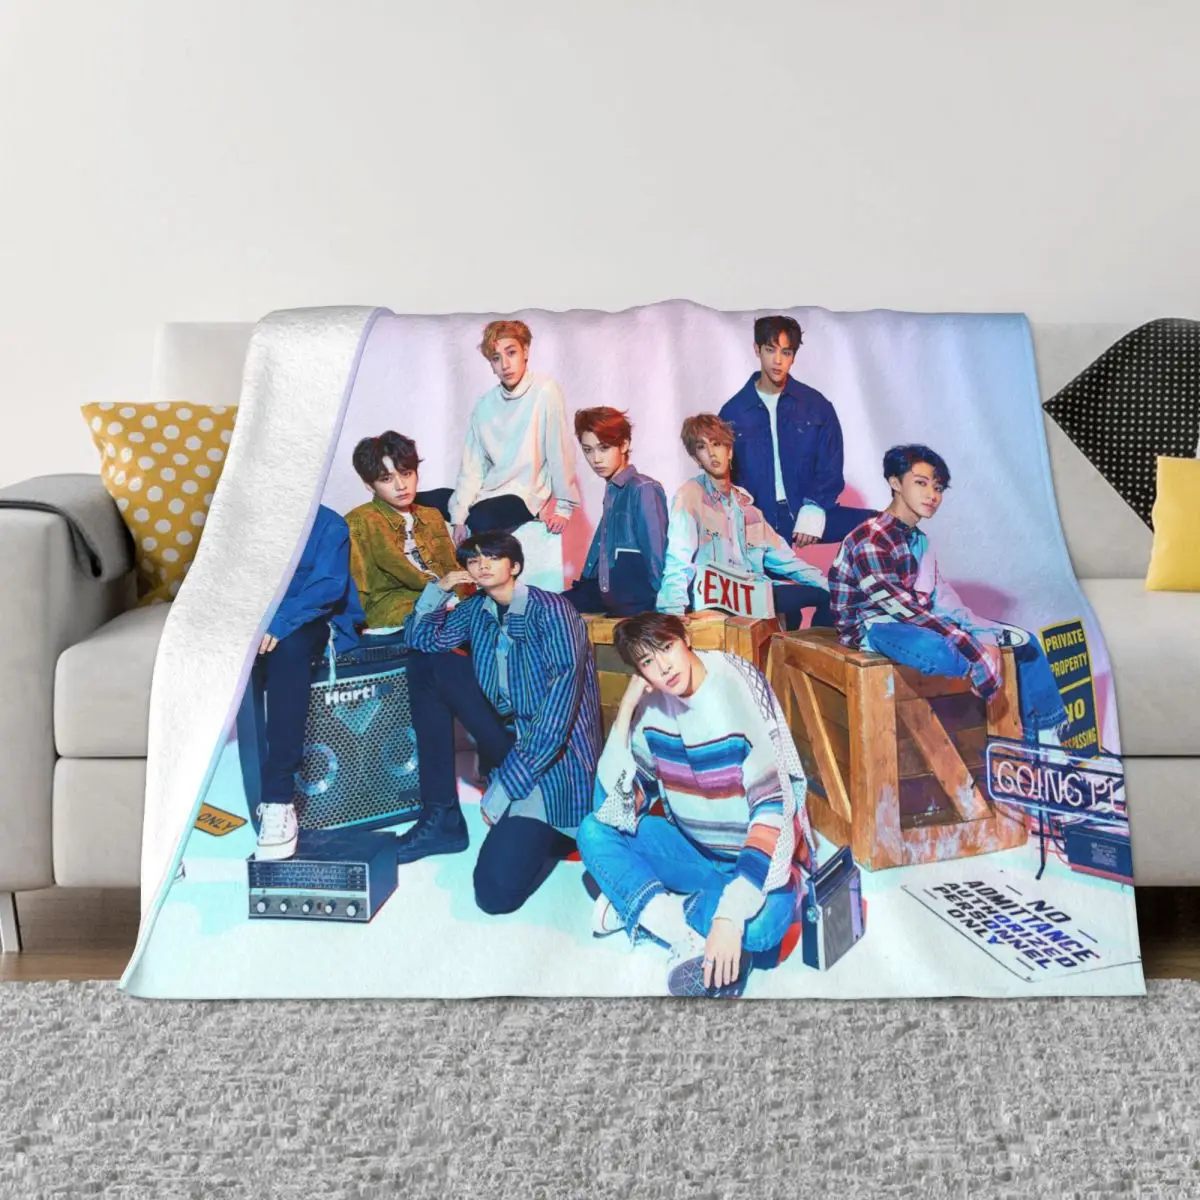 Kpop Star Stray Kids Певица Идол Одеяло Флисовое Всесезонное Мягкое Одеяло для постельных принадлежностей Наружное плюшевое тонкое одеяло